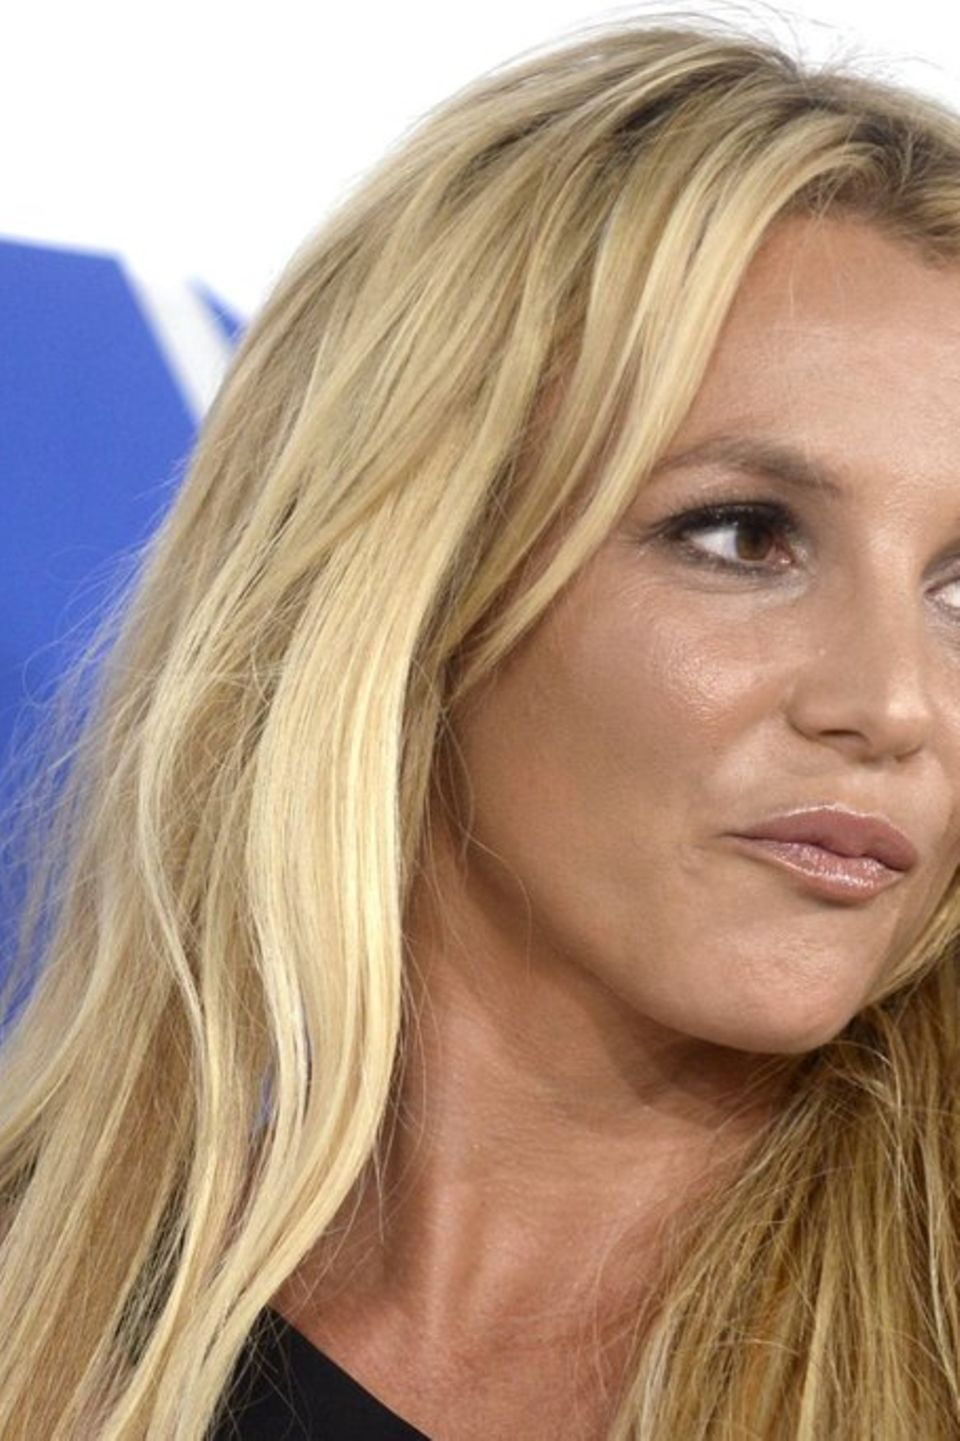 Ein Verlag prüft derzeit angeblich, ob Britney Spears' Autobiografie erscheinen kann.